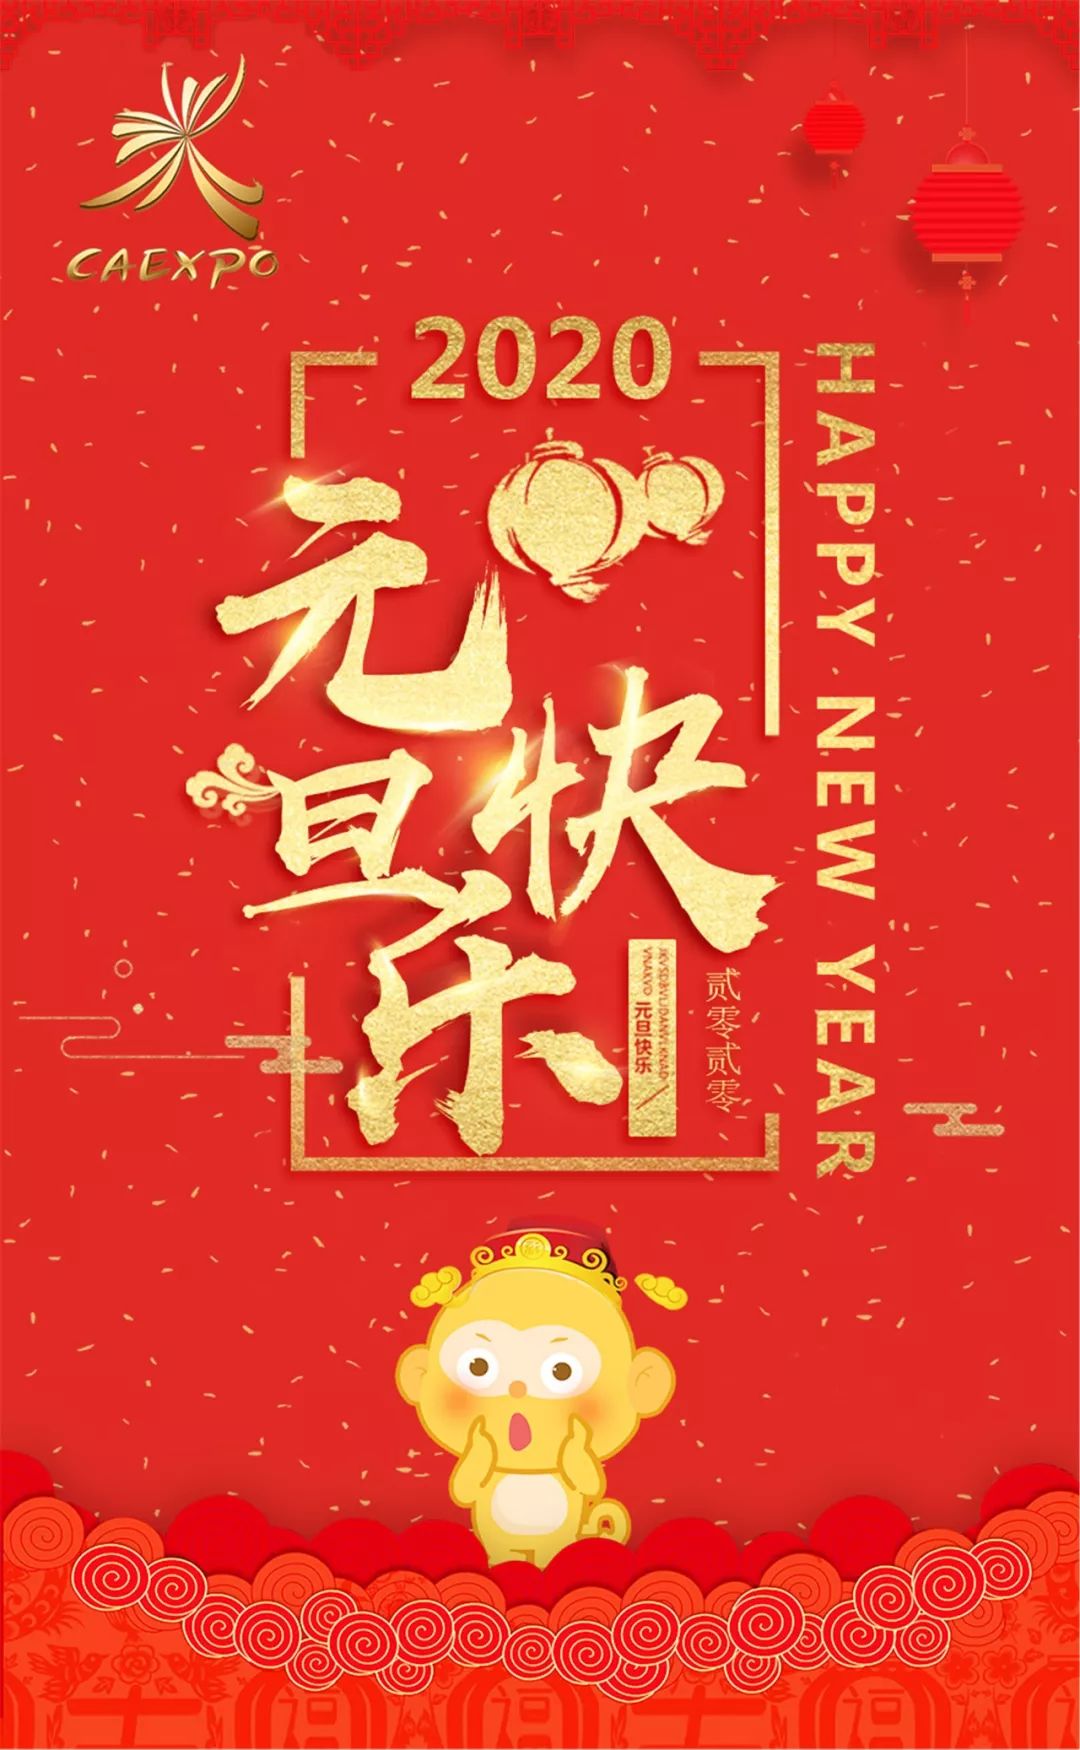 中国东盟博览会恭祝您2020年元旦快乐